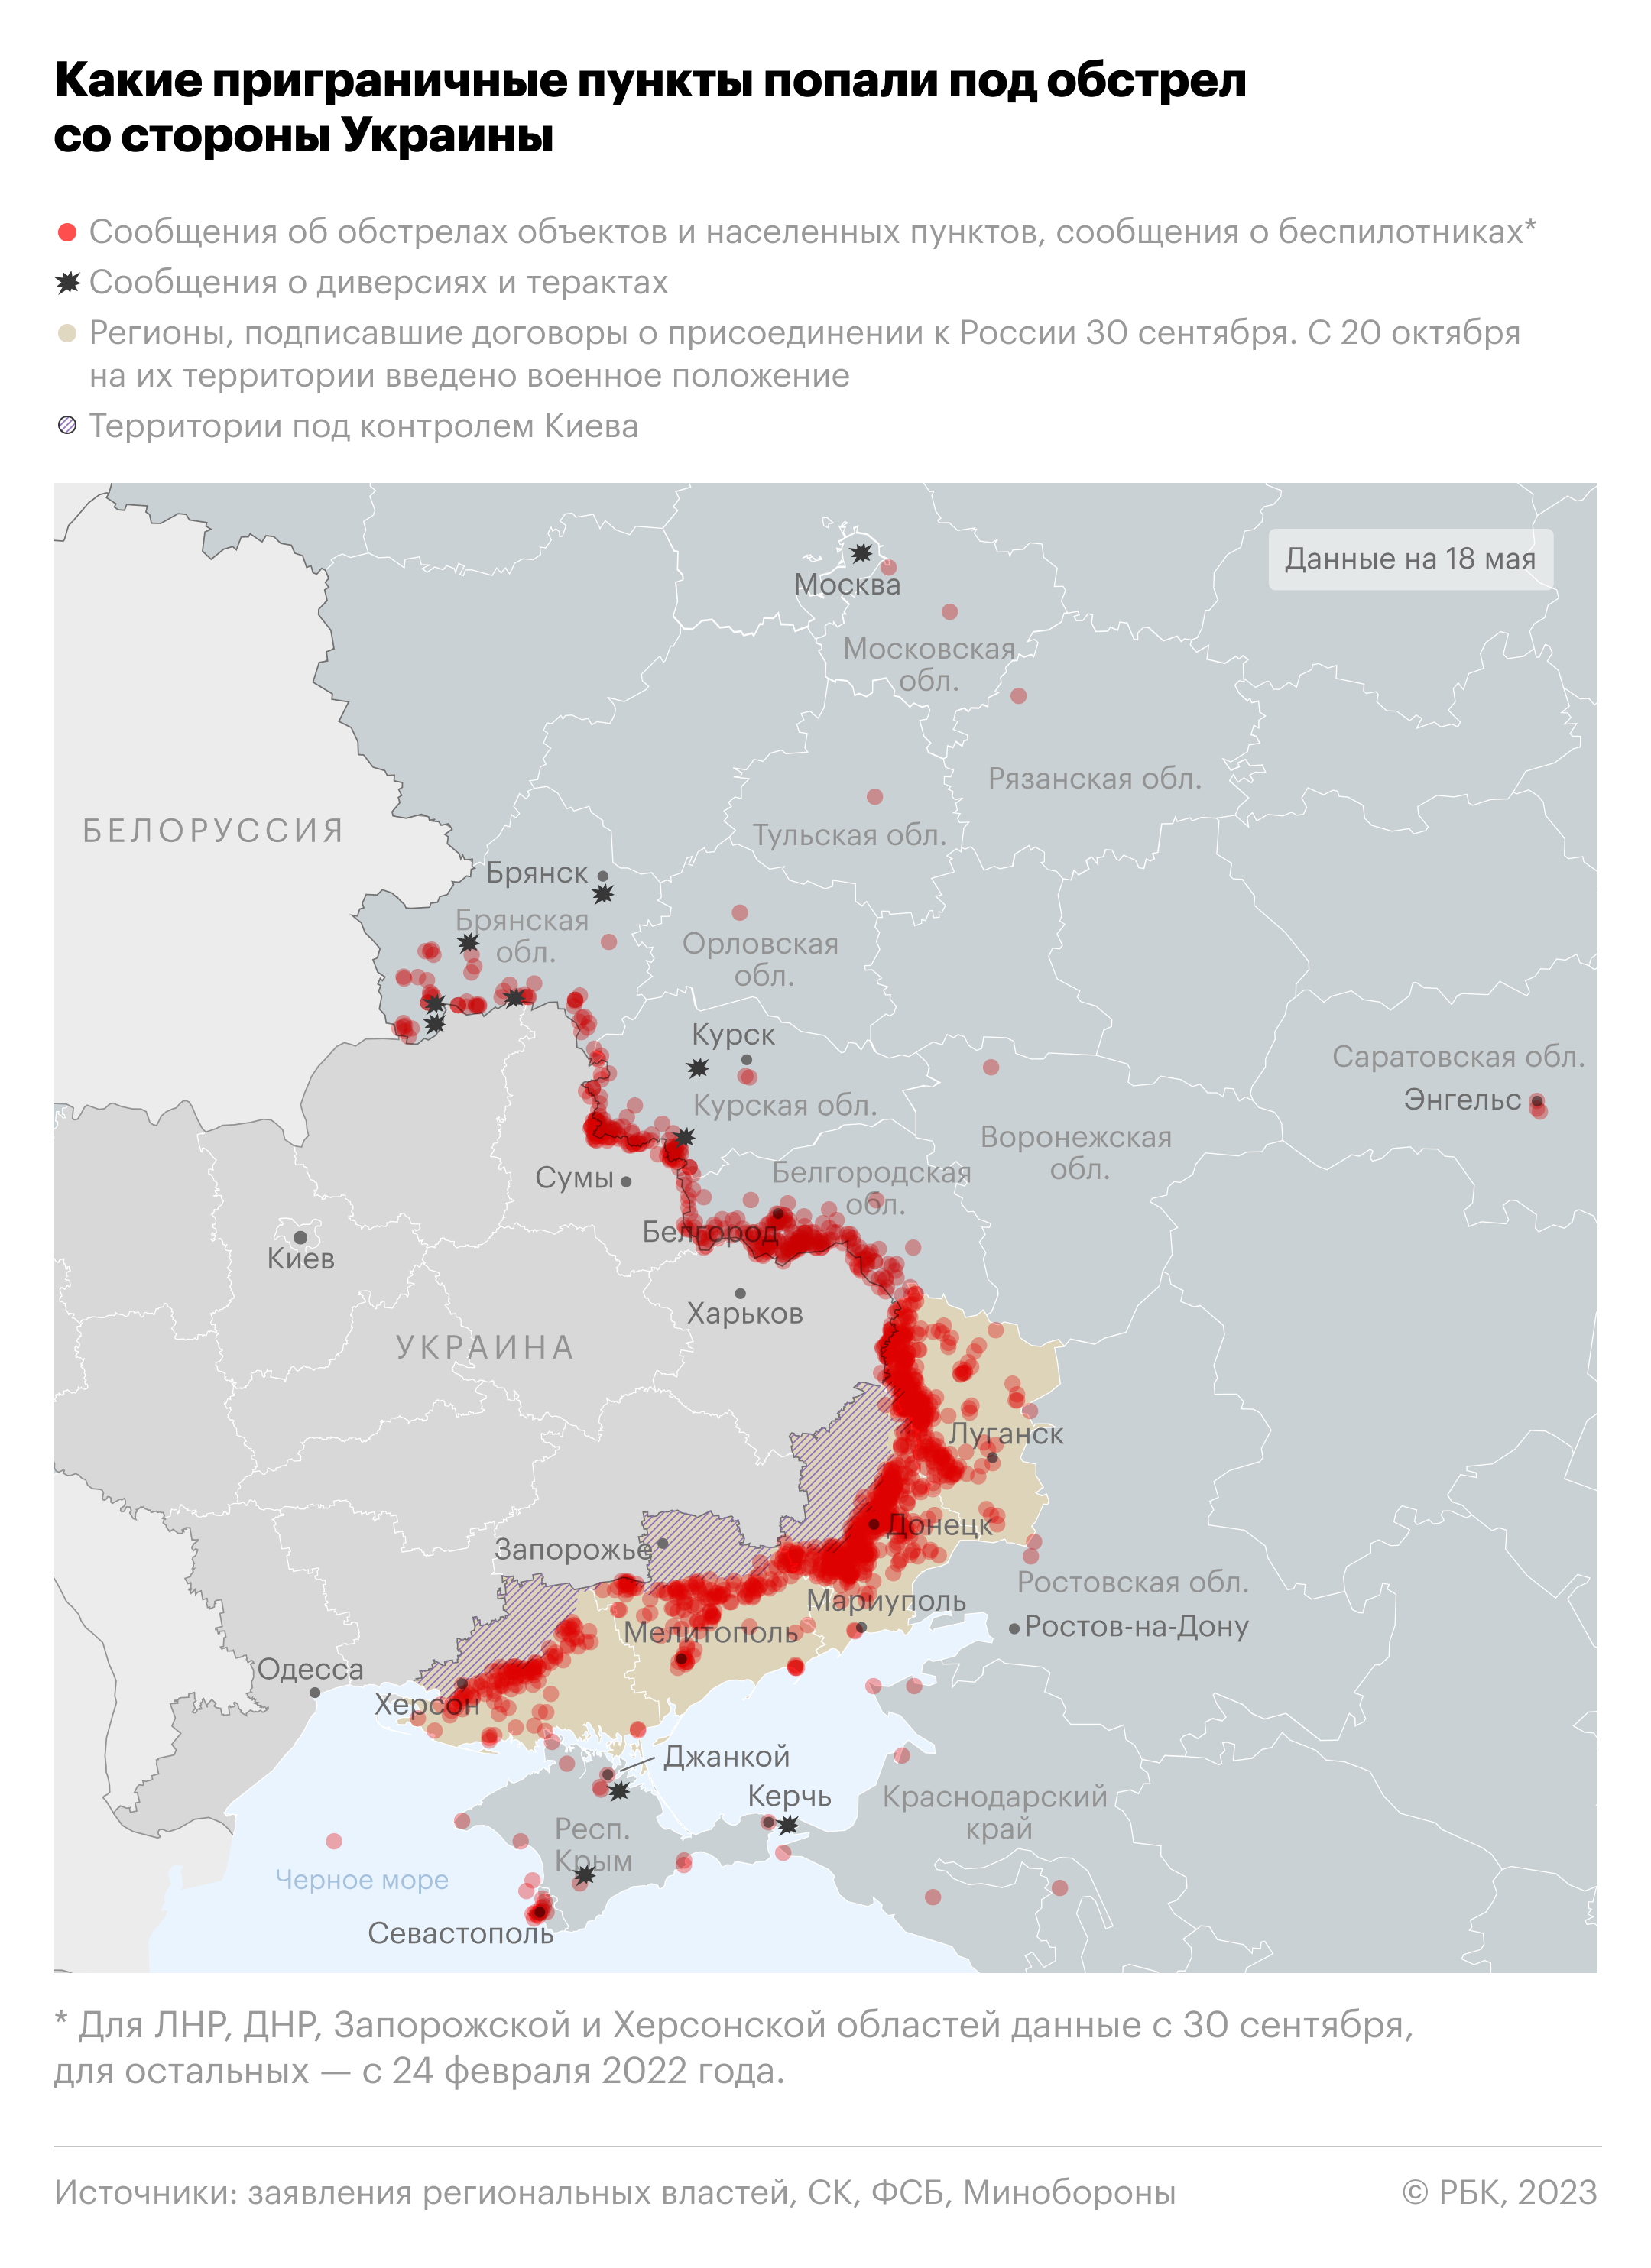 В Белгородской области опровергли попытку прорыва украинских диверсантов"/>













